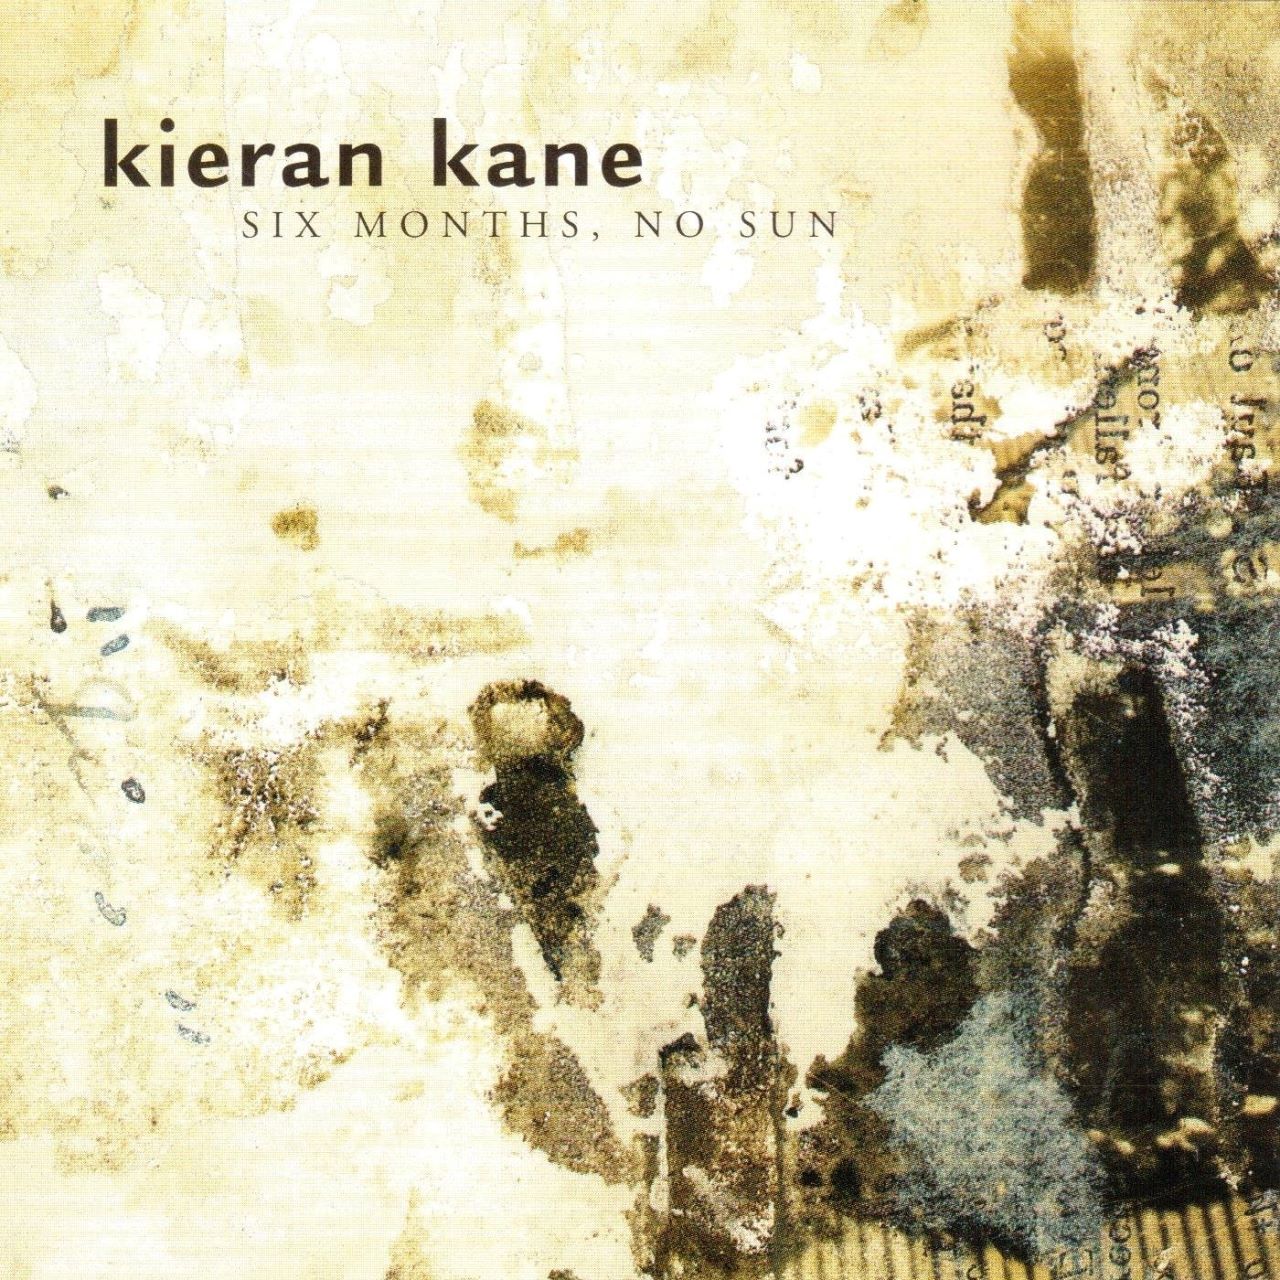 Kieran Kane - Six Months, No Sun cover album